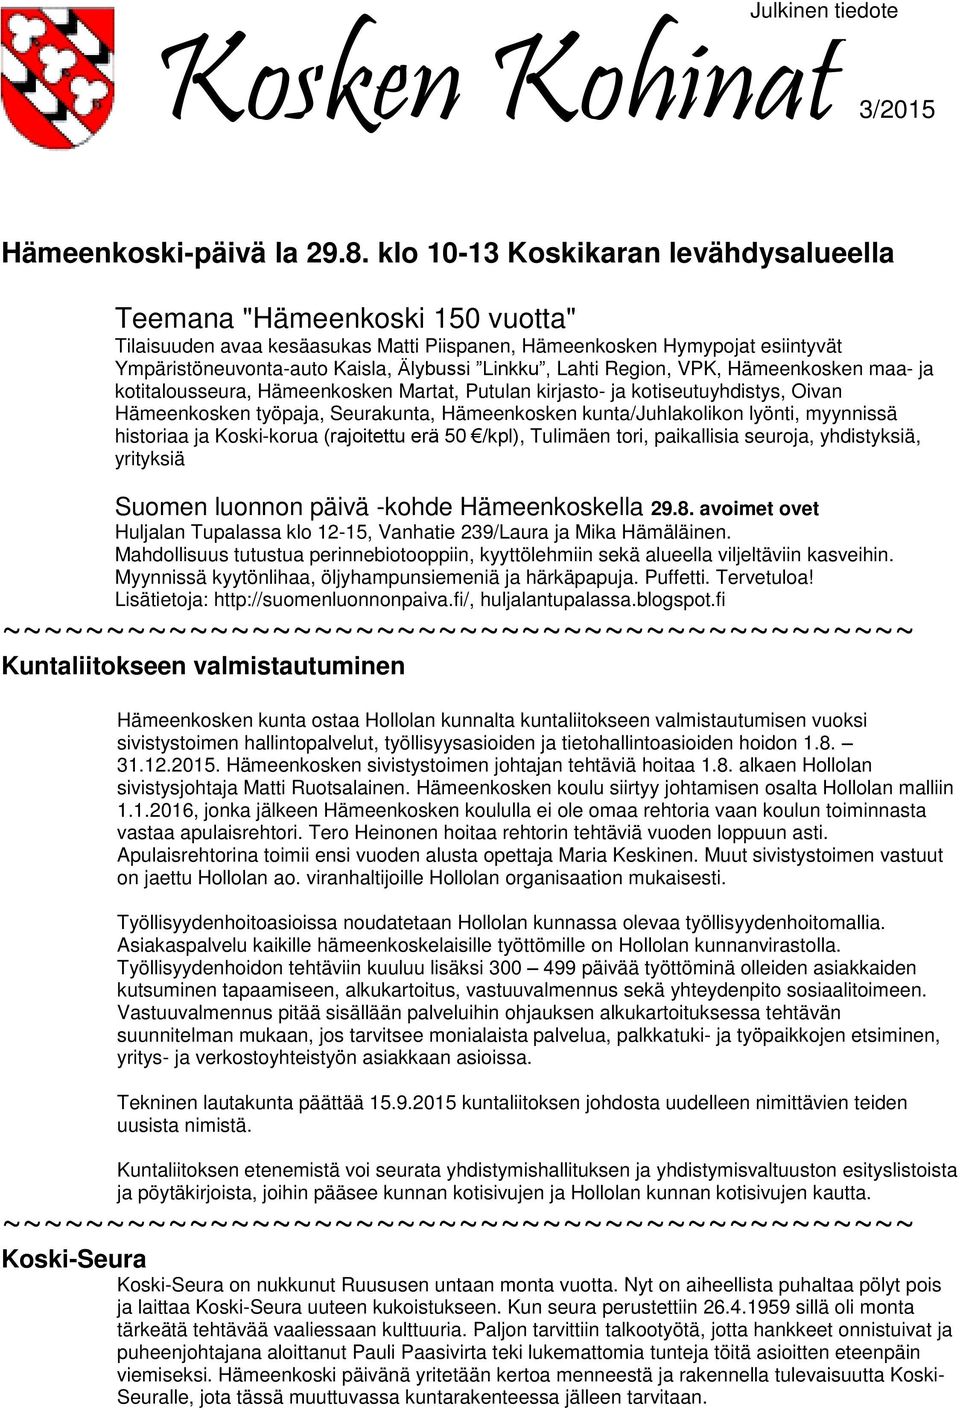 Lahti Region, VPK, Hämeenkosken maa- ja kotitalousseura, Hämeenkosken Martat, Putulan kirjasto- ja kotiseutuyhdistys, Oivan Hämeenkosken työpaja, Seurakunta, Hämeenkosken kunta/juhlakolikon lyönti,